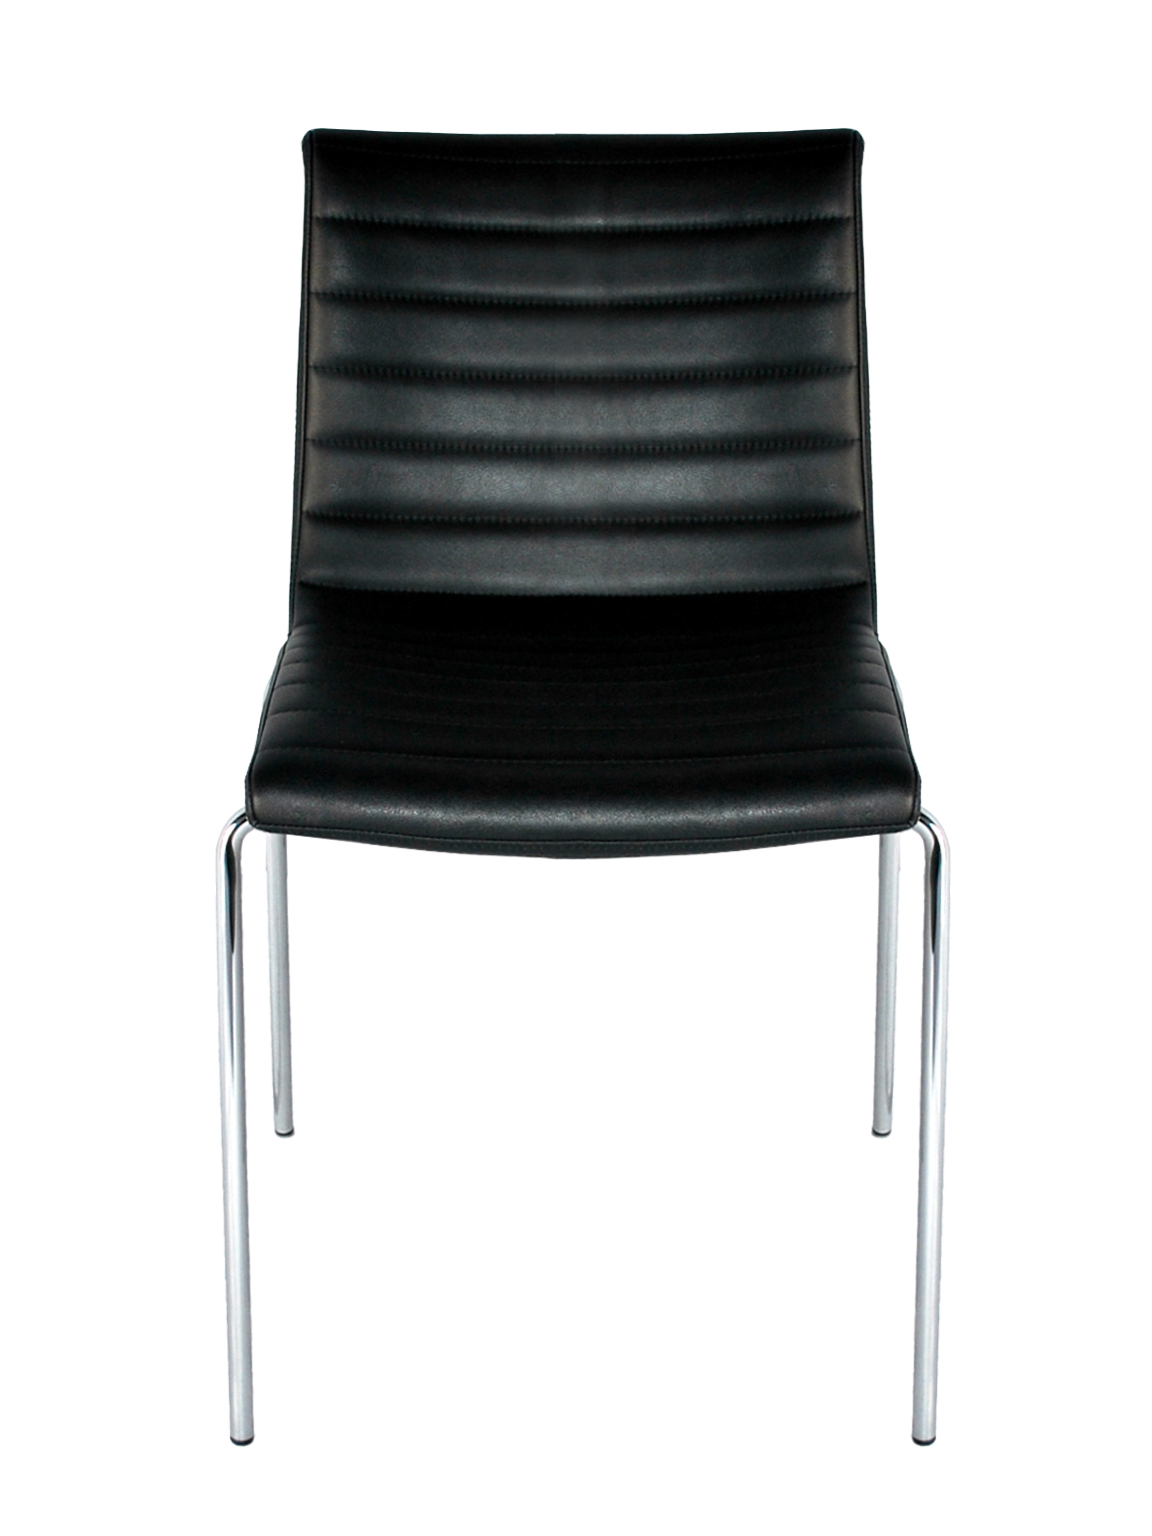 zwart leder stapel stoel afb 2-groot-vert-1152×1536